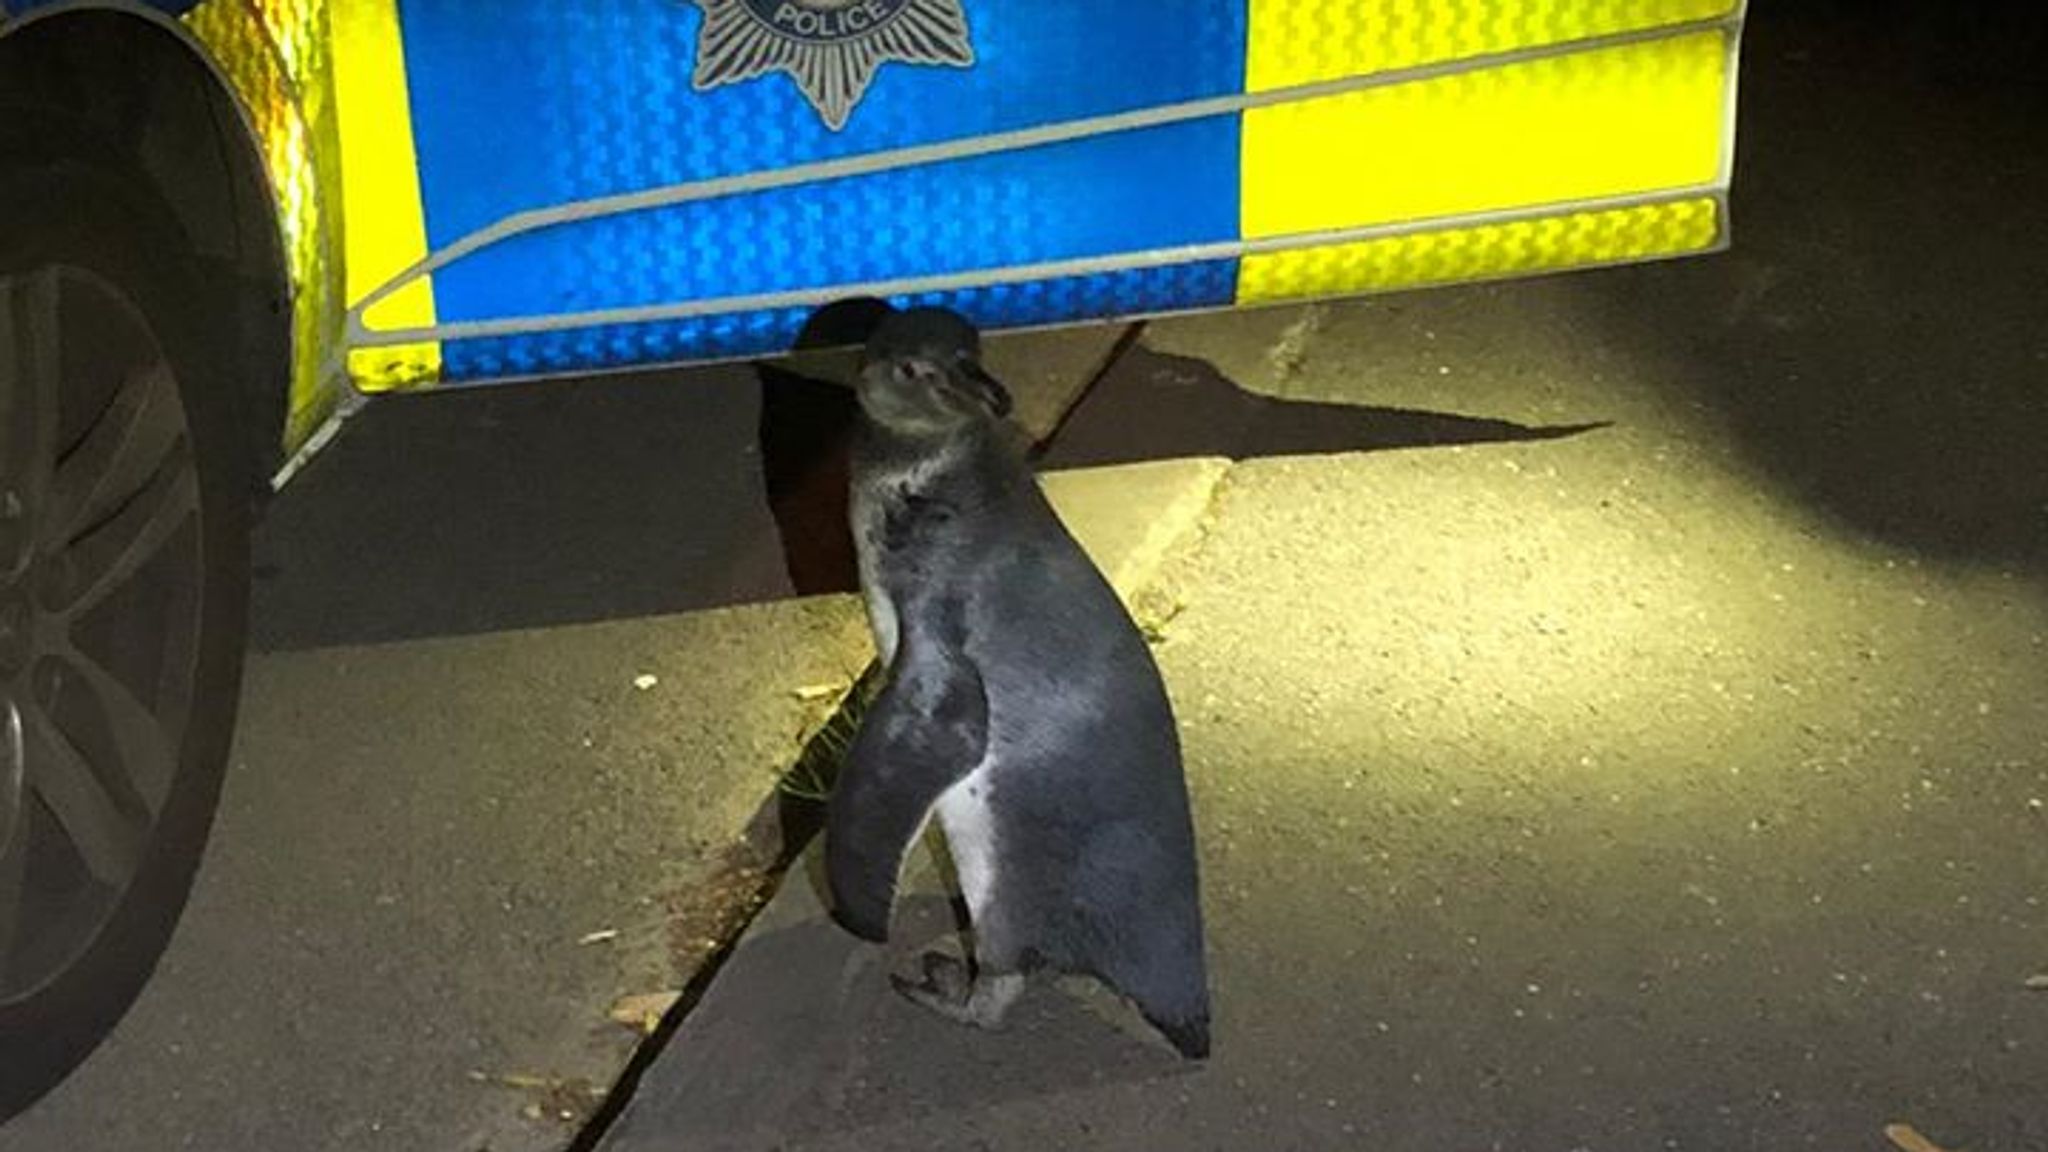 Officers named the penguin Po-Po